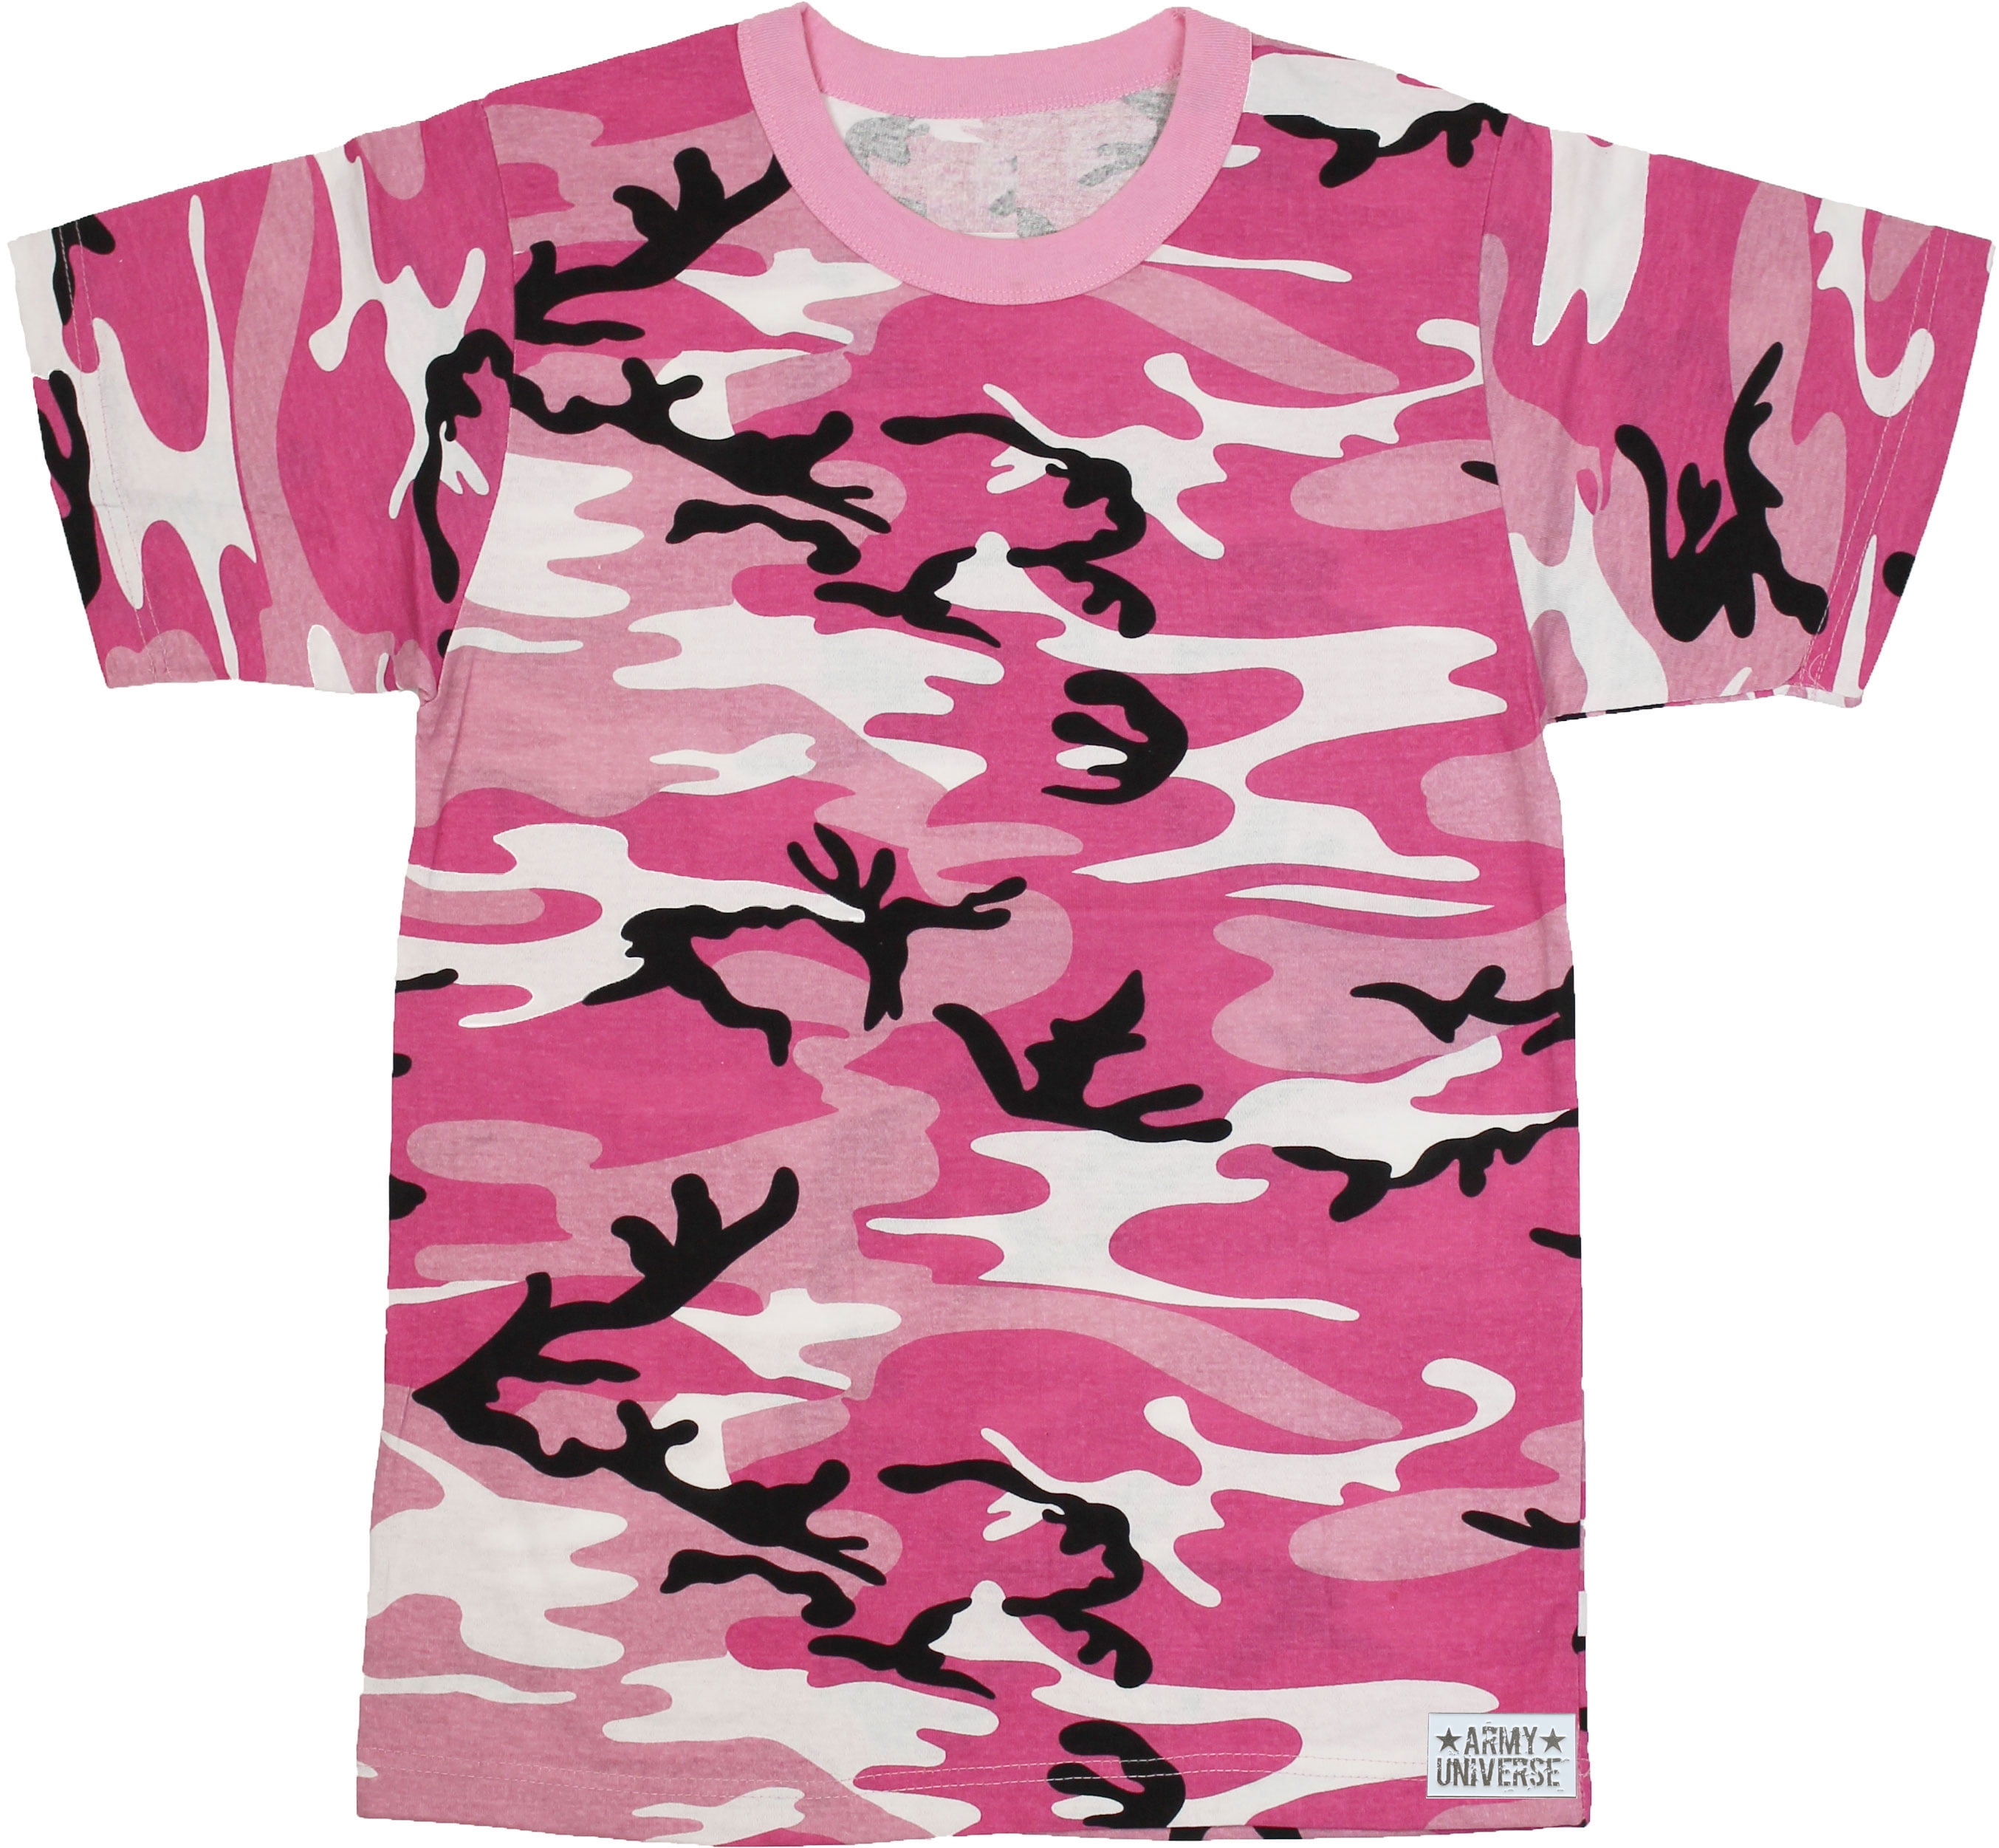 pink camo shirt mens